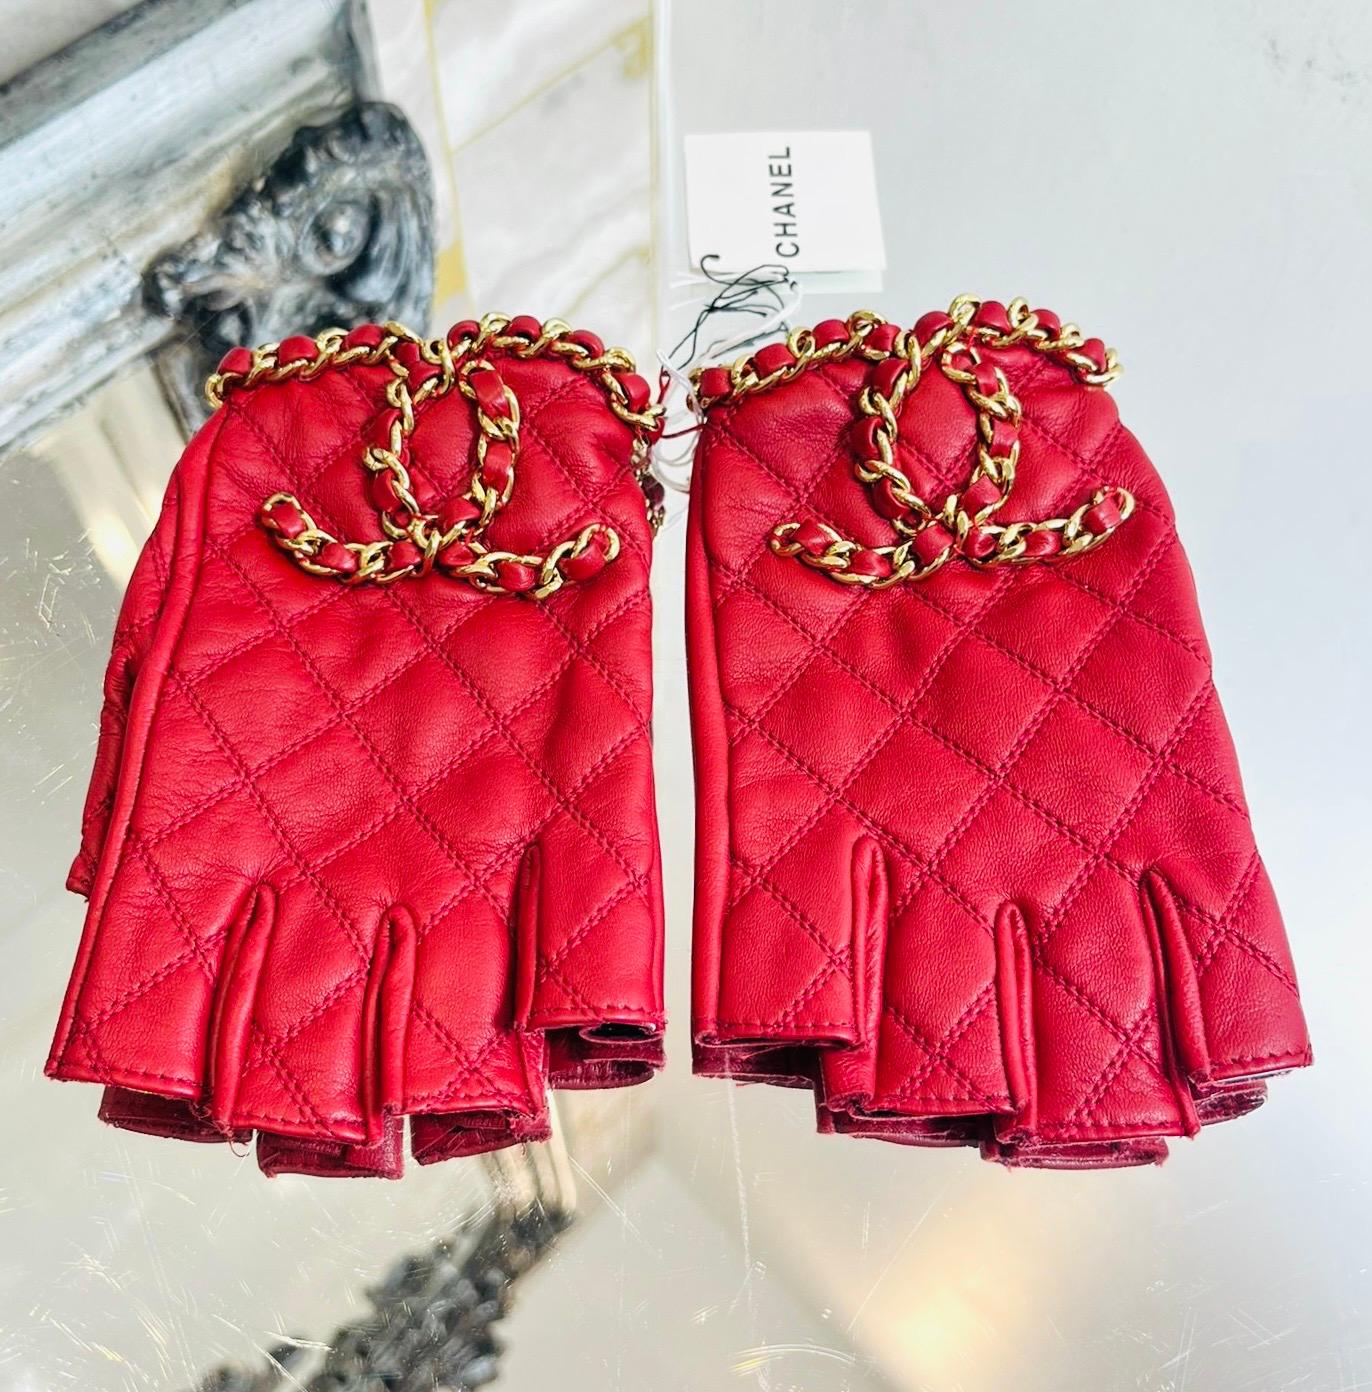 Neuf - Chanel 'CC' Logo Chain & Leather Fingerless Gloves

Gants rouges conçus avec les coutures en diamant emblématiques de Chanel.

Elle est ornée d'une chaîne entrelacée emblématique et du logo 